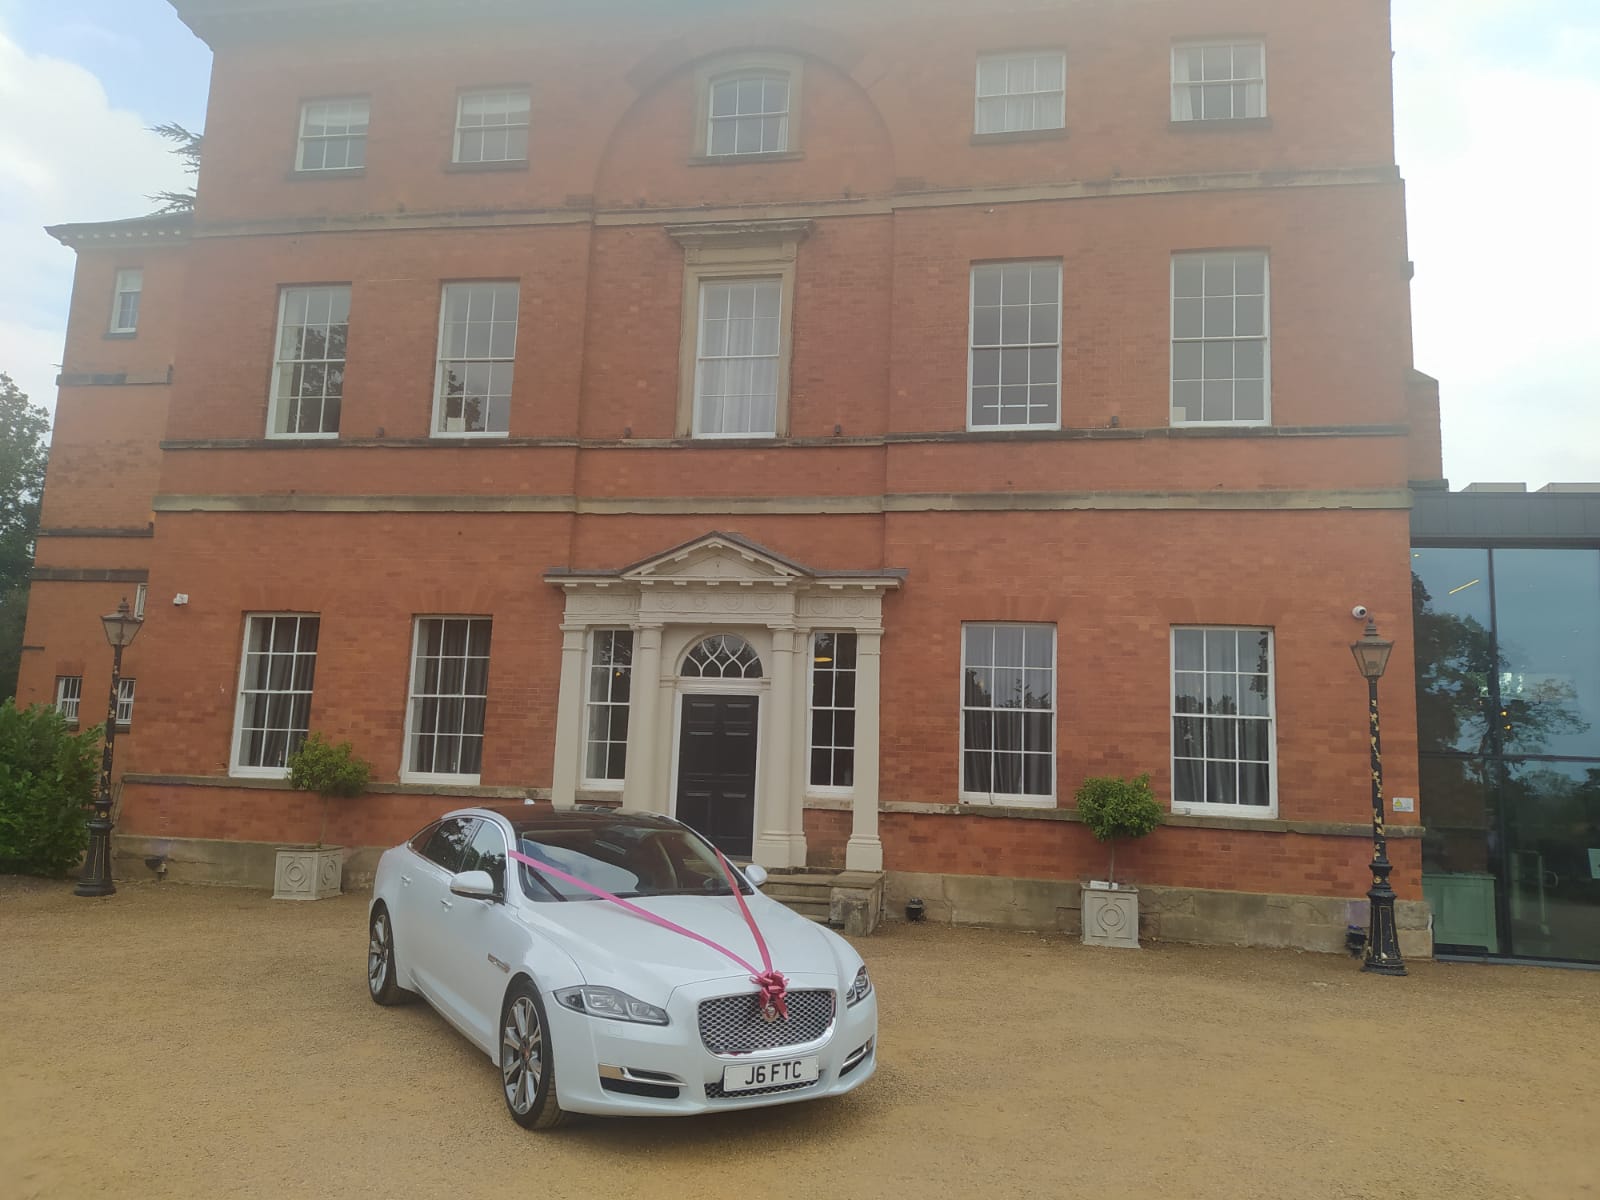 Rolls Royce wedding car Oxford 